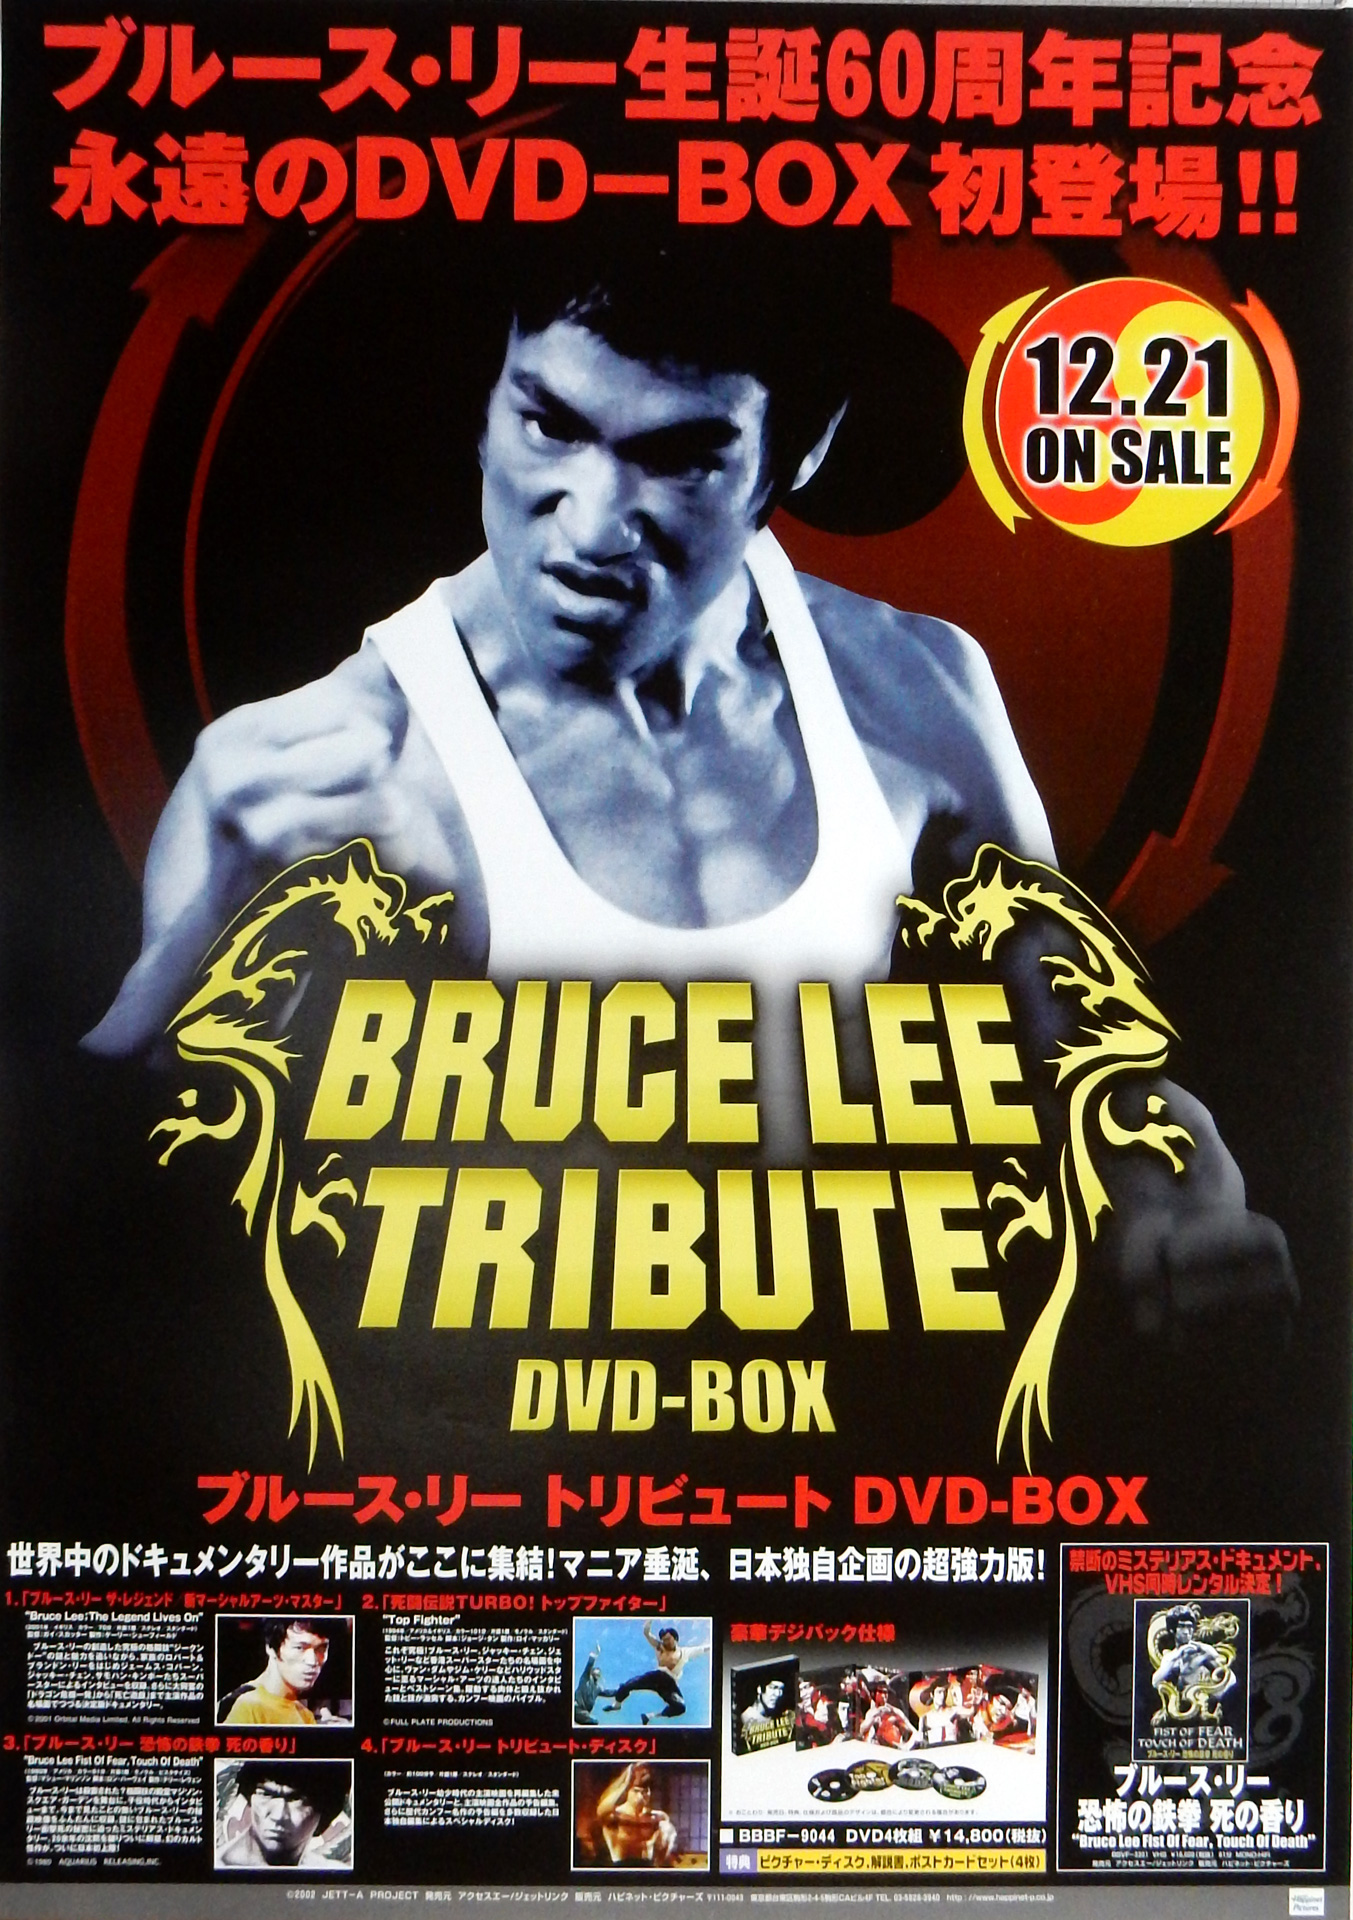 ブルース・リー トリビュート DVD-BOXのポスター